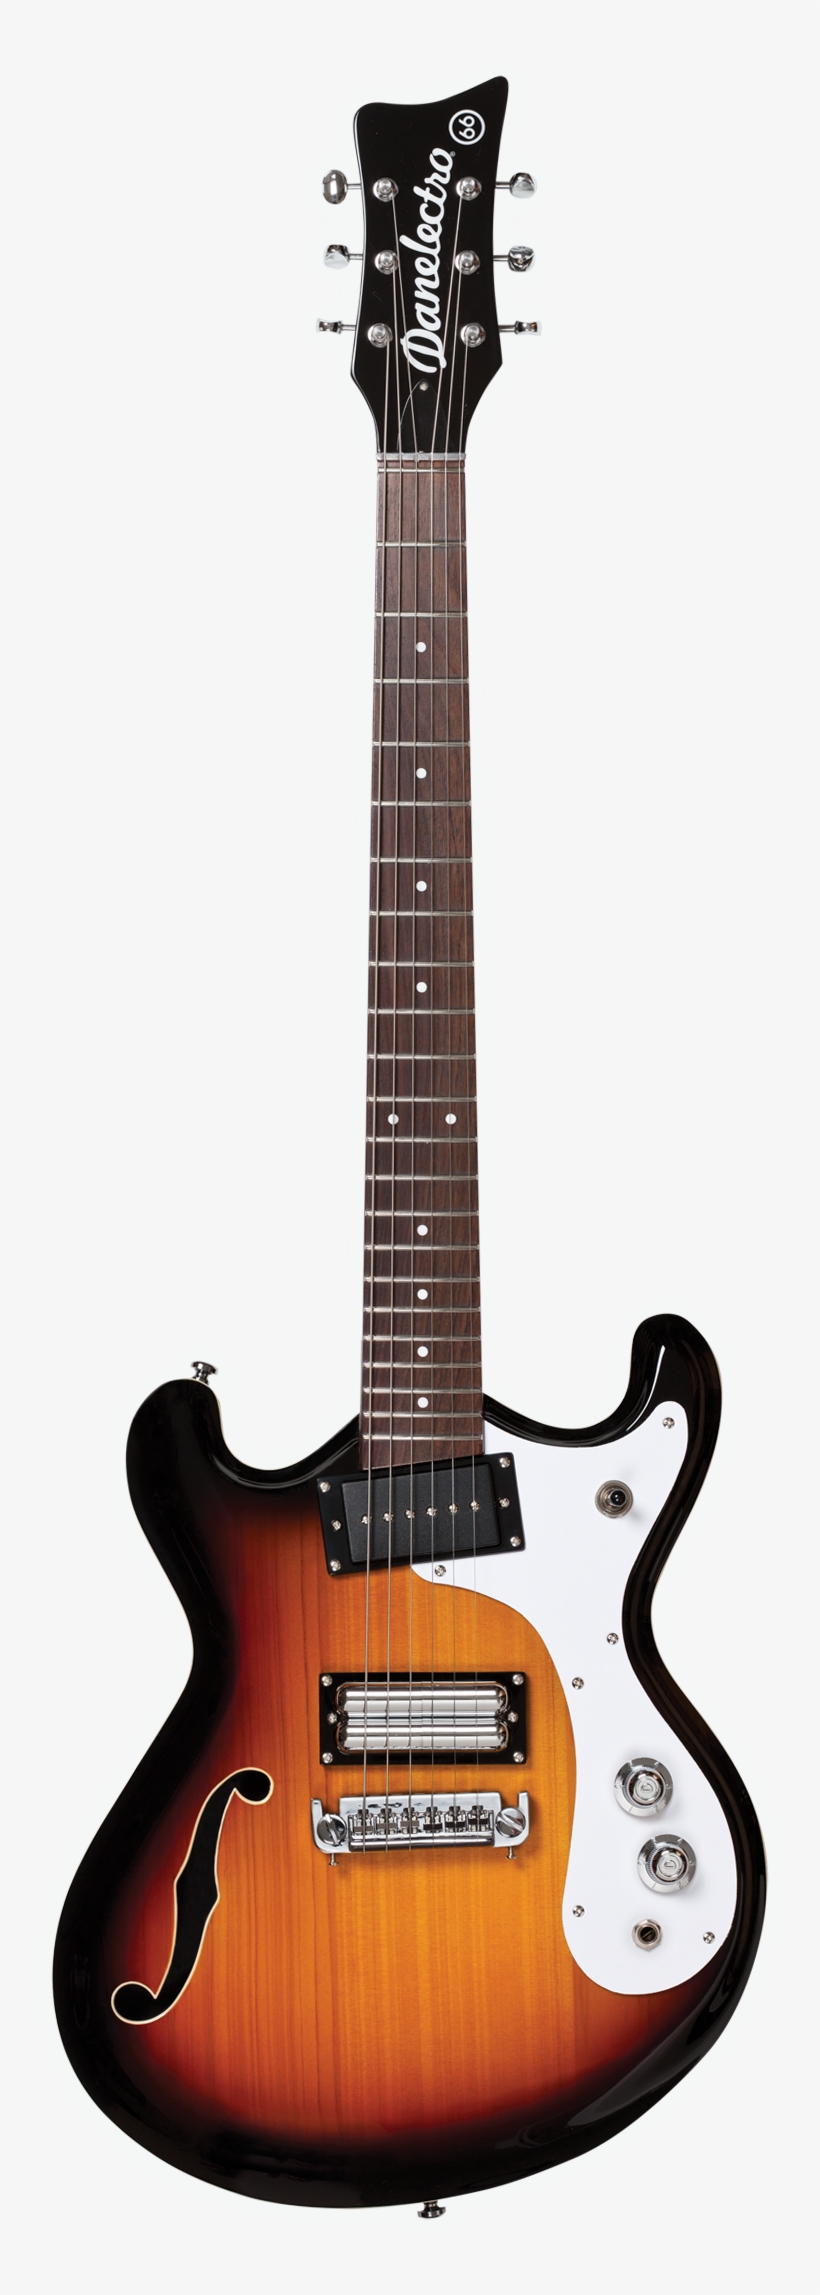 Danelectro The '66 Kurt Cobain, Bass Guitars - Danelectro 66, transparent png #4809748